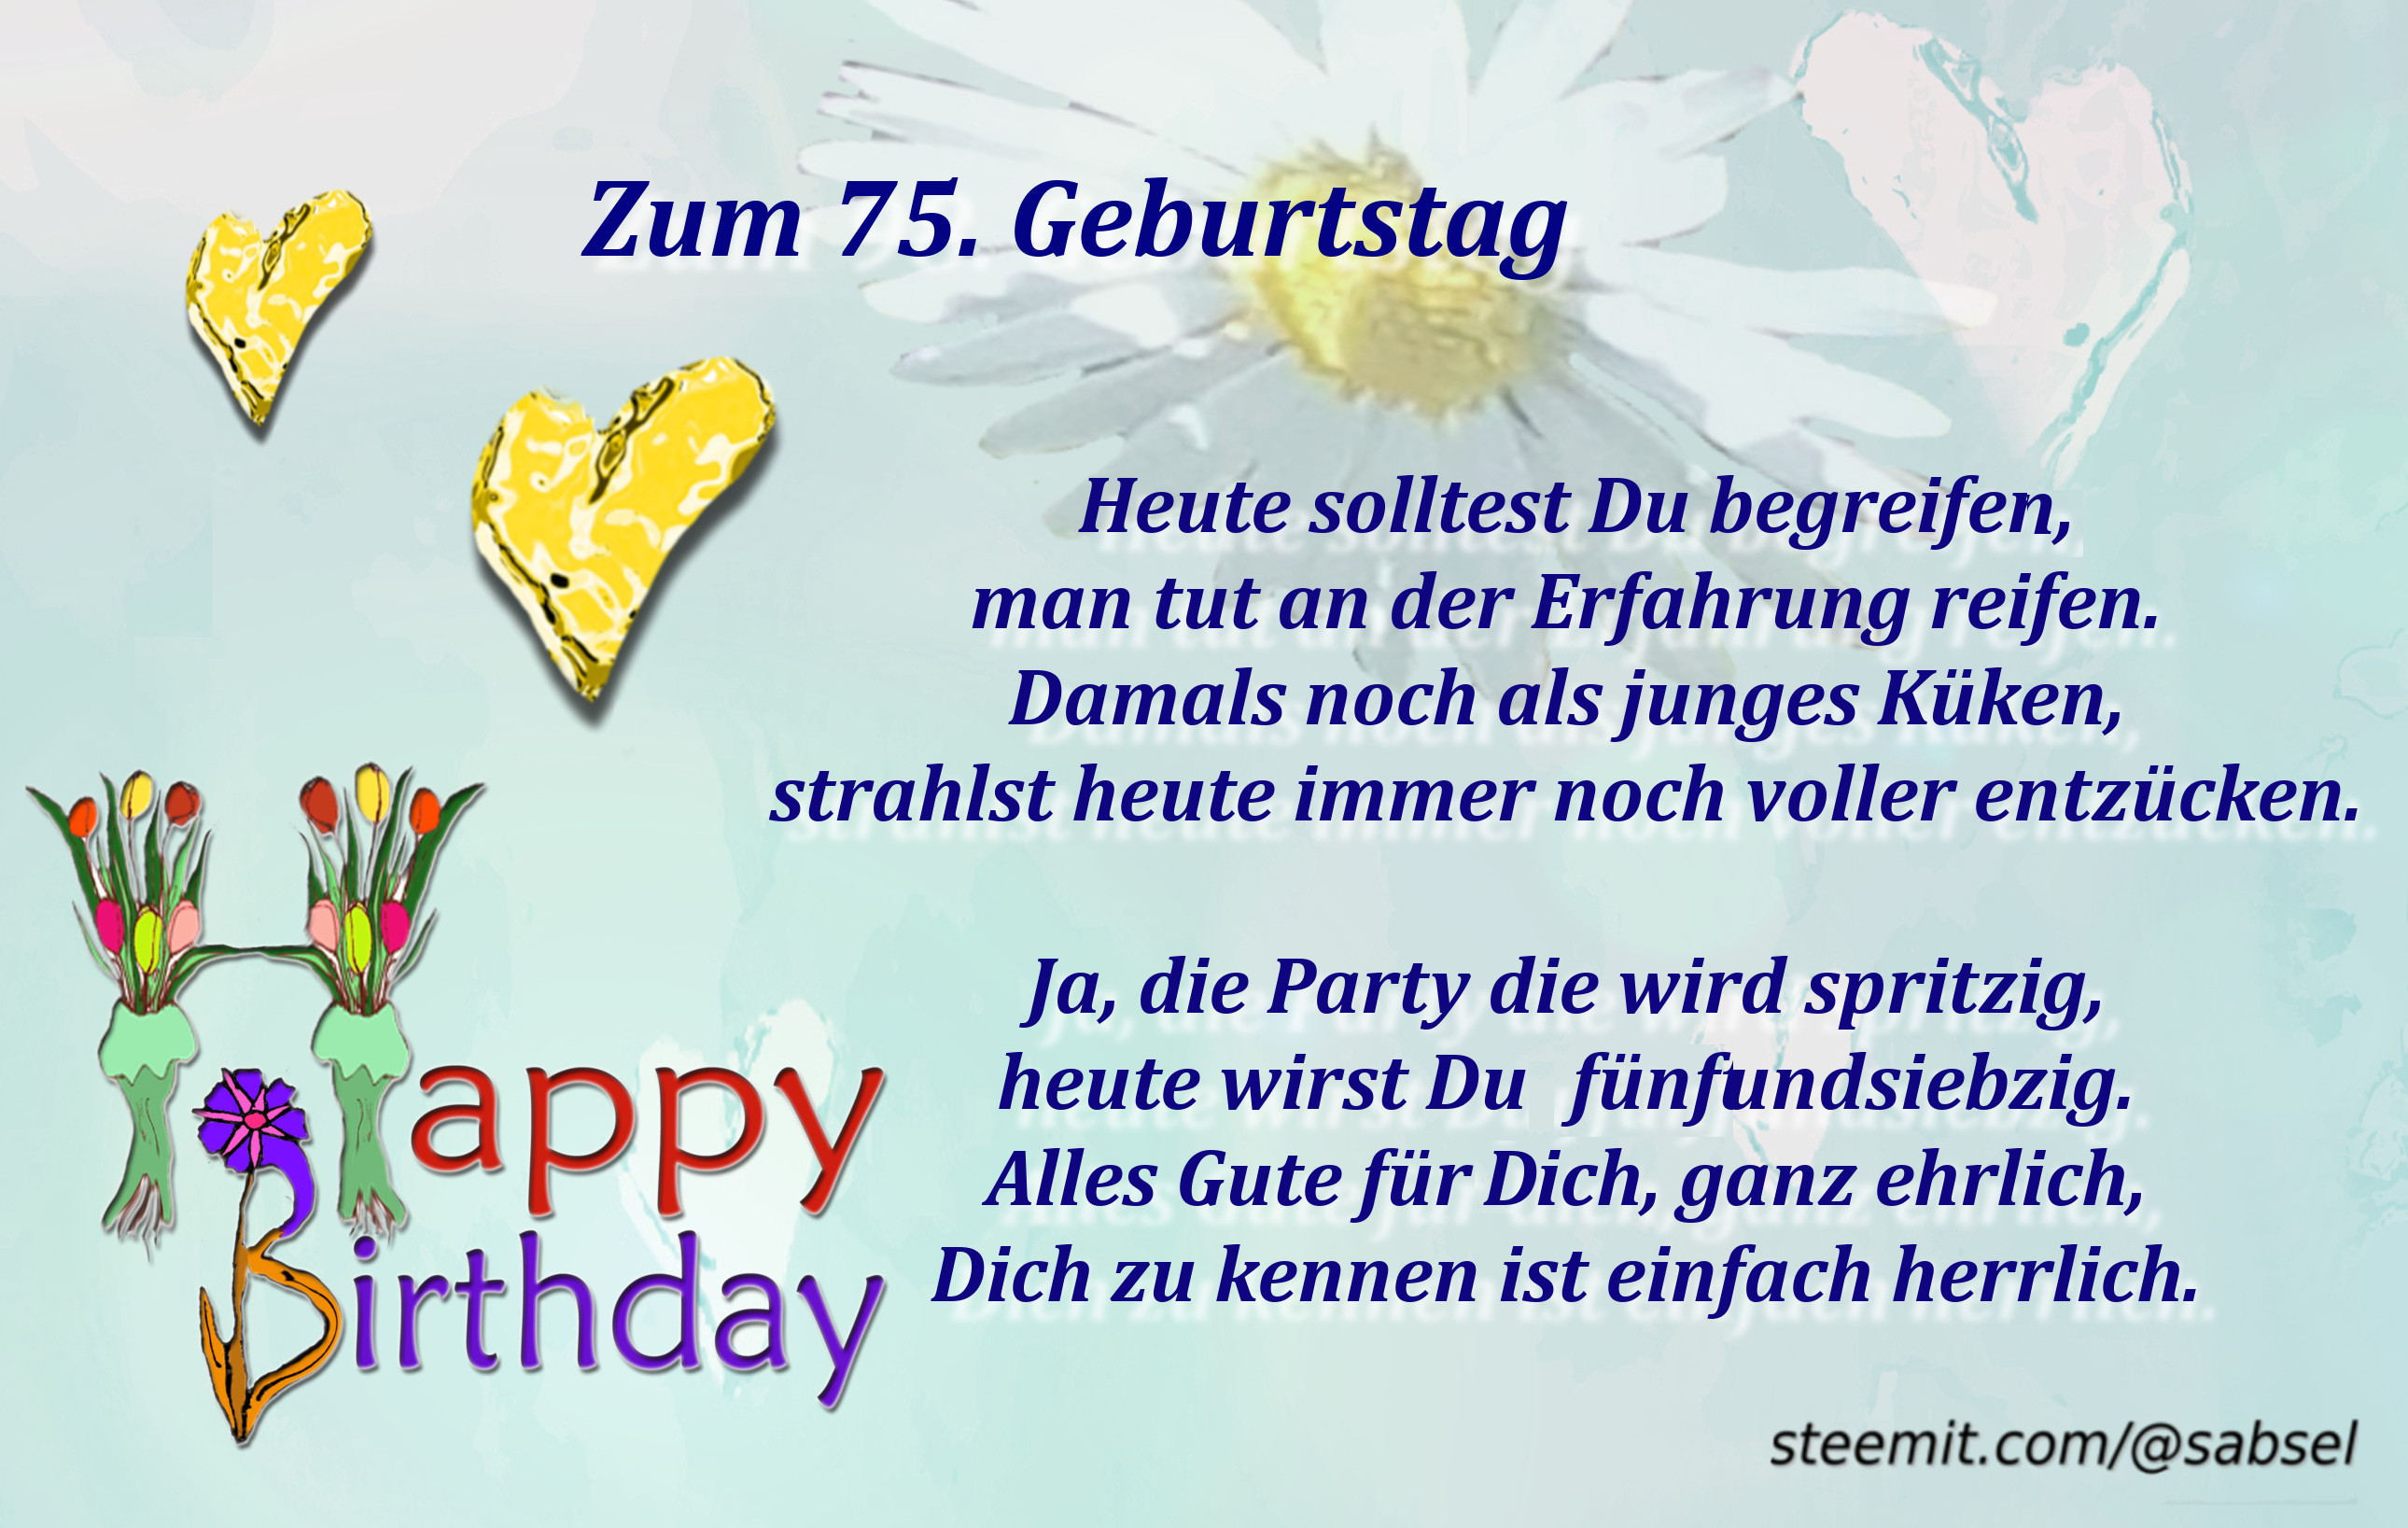 Geburtstagswünsche Zum 75. Geburtstag
 Verse Reime Gedichte von Sabsel Zum 75 Geburtstag — Steemkr